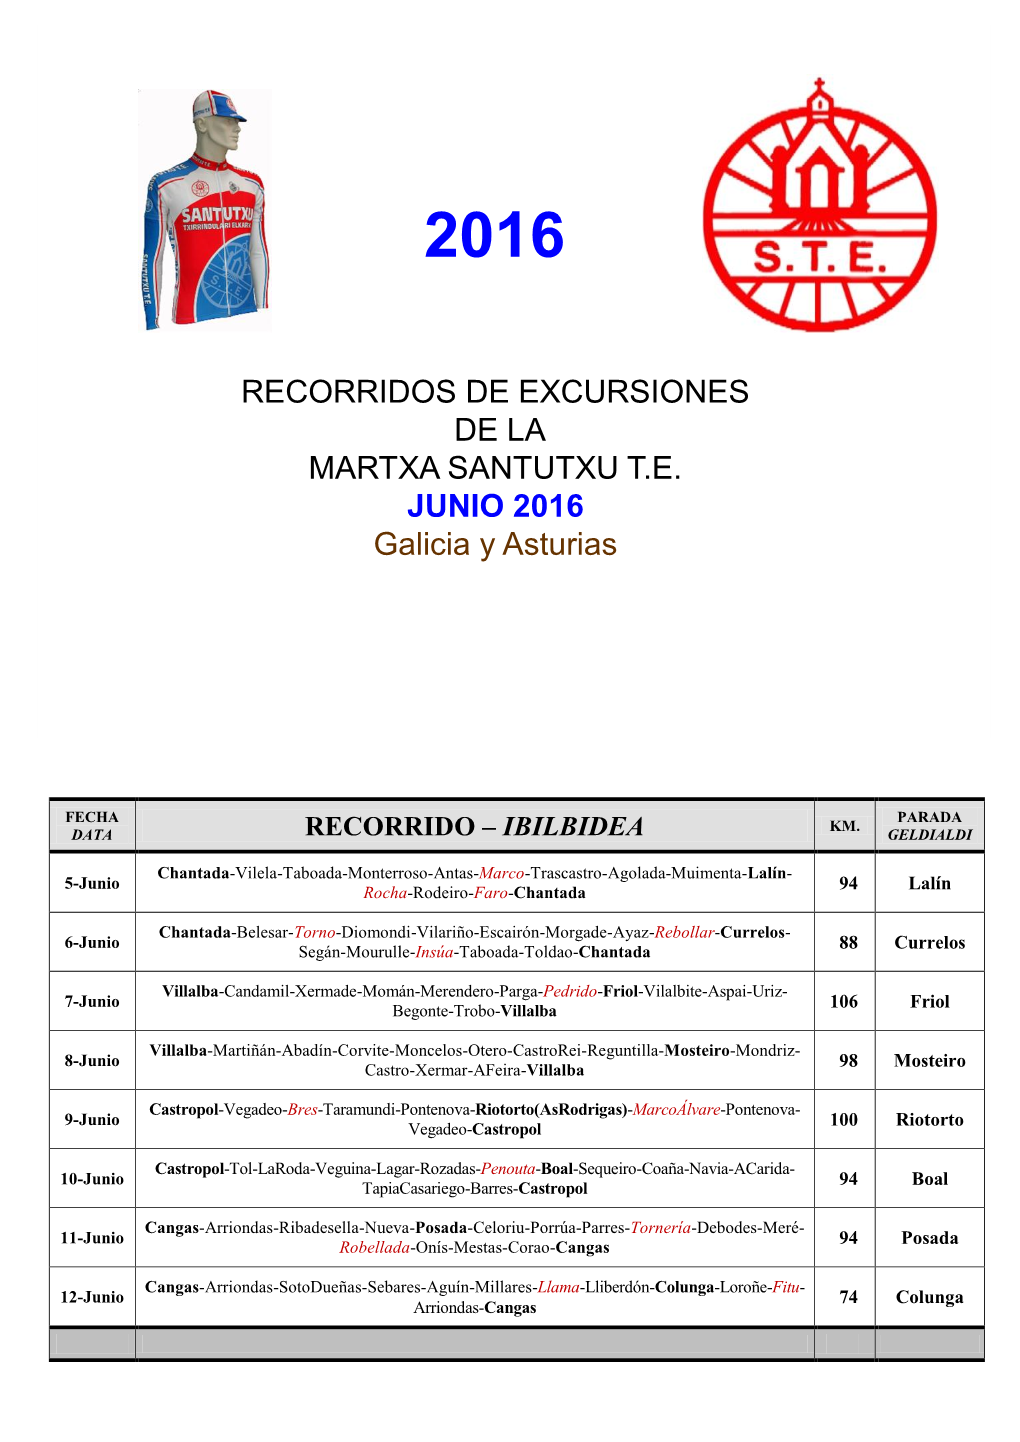 RECORRIDOS DE EXCURSIONES DE LA MARTXA SANTUTXU T.E. JUNIO 2016 Galicia Y Asturias